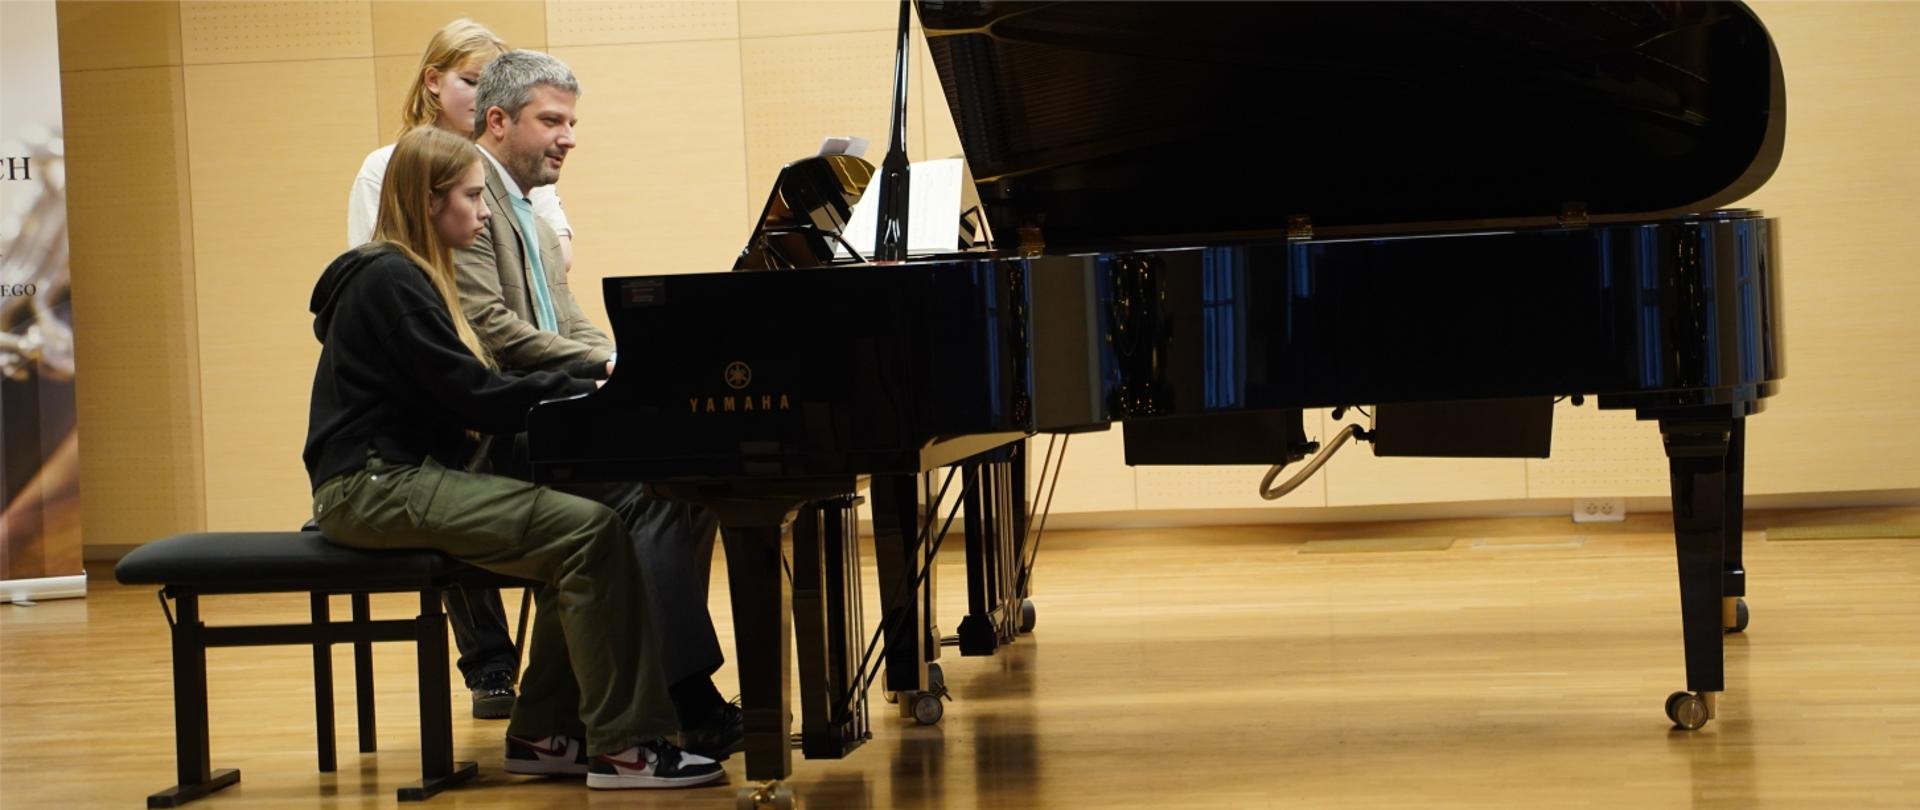 Zdjęcia przedstawiają uczestników warsztatów pianistycznych